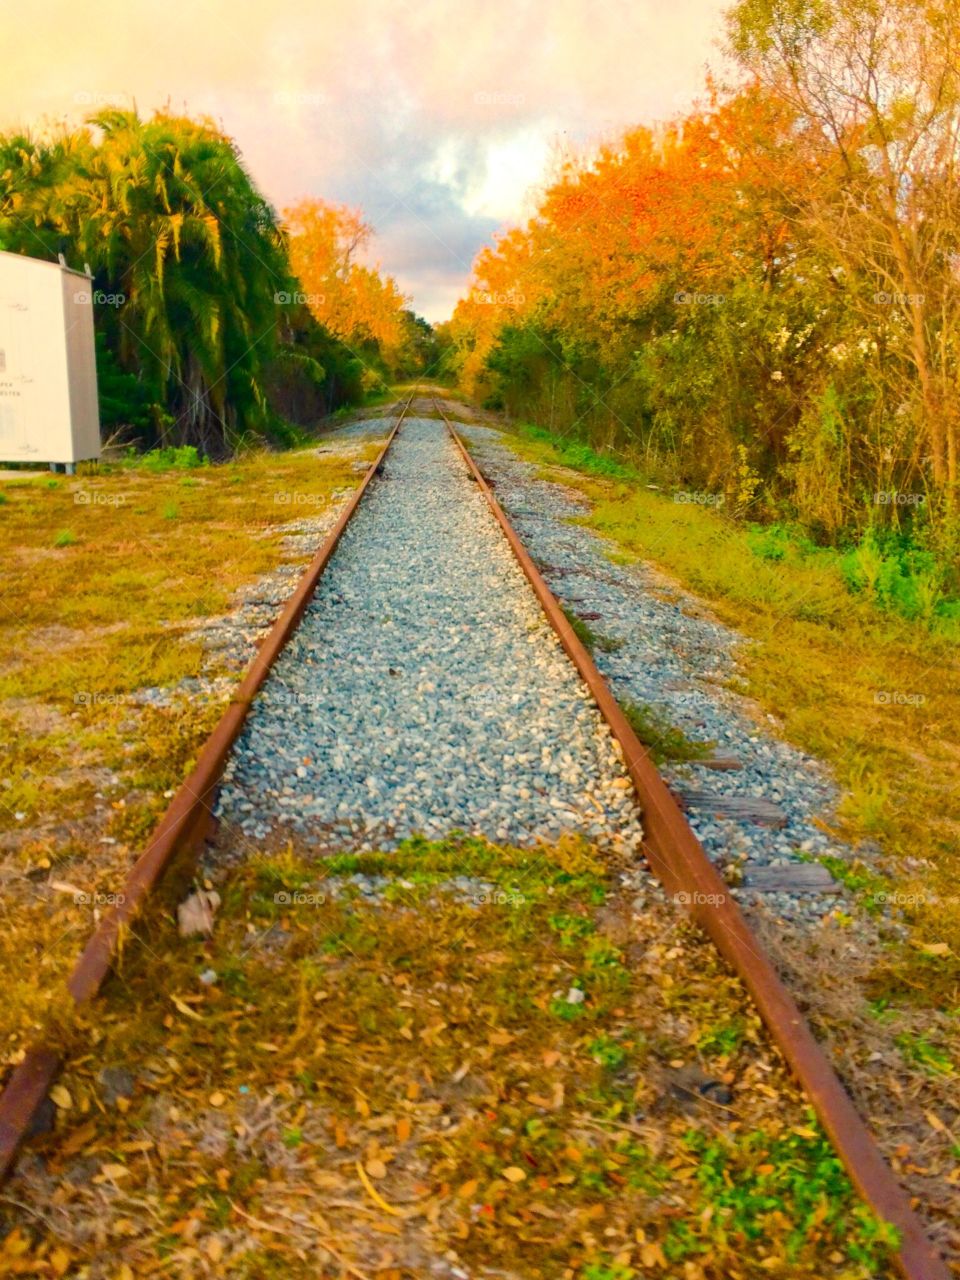 Abandoned railway tracks